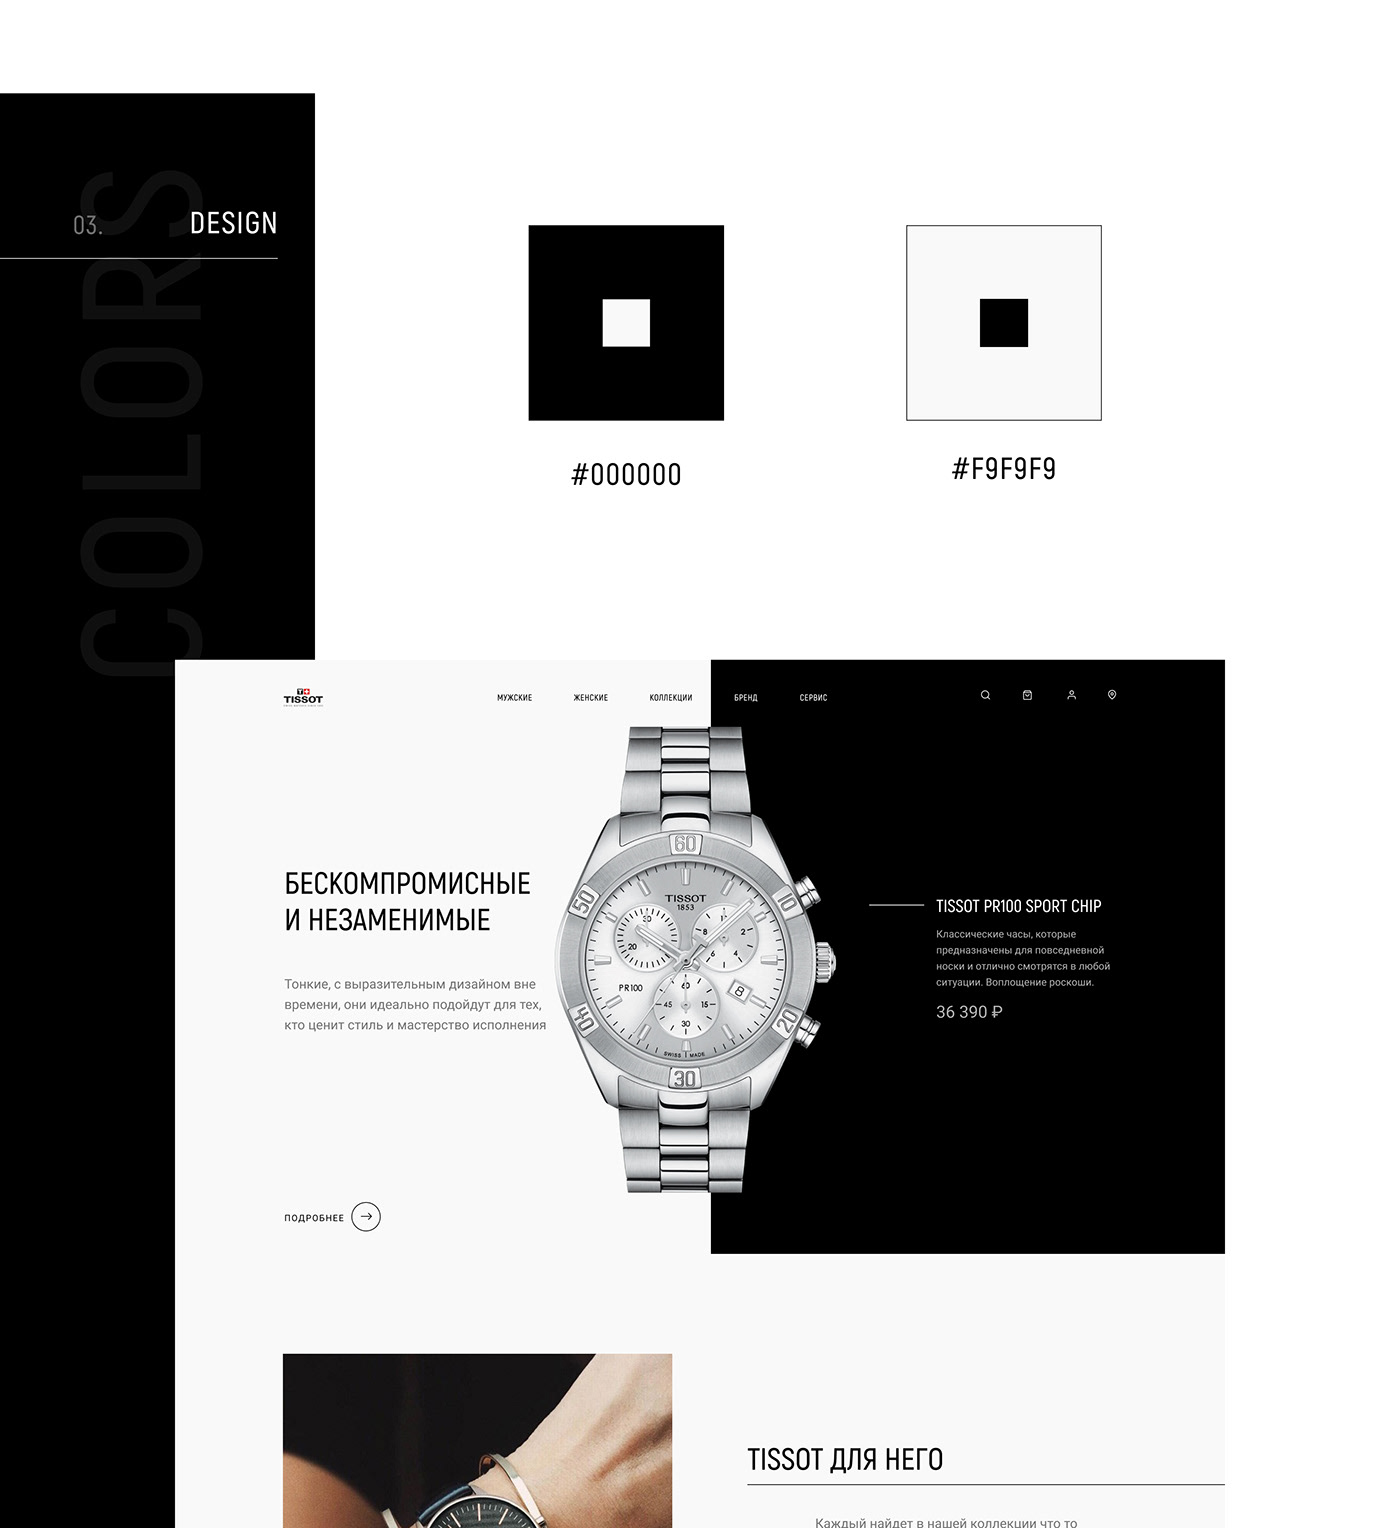 design redesign TISSOT watch Webdesign